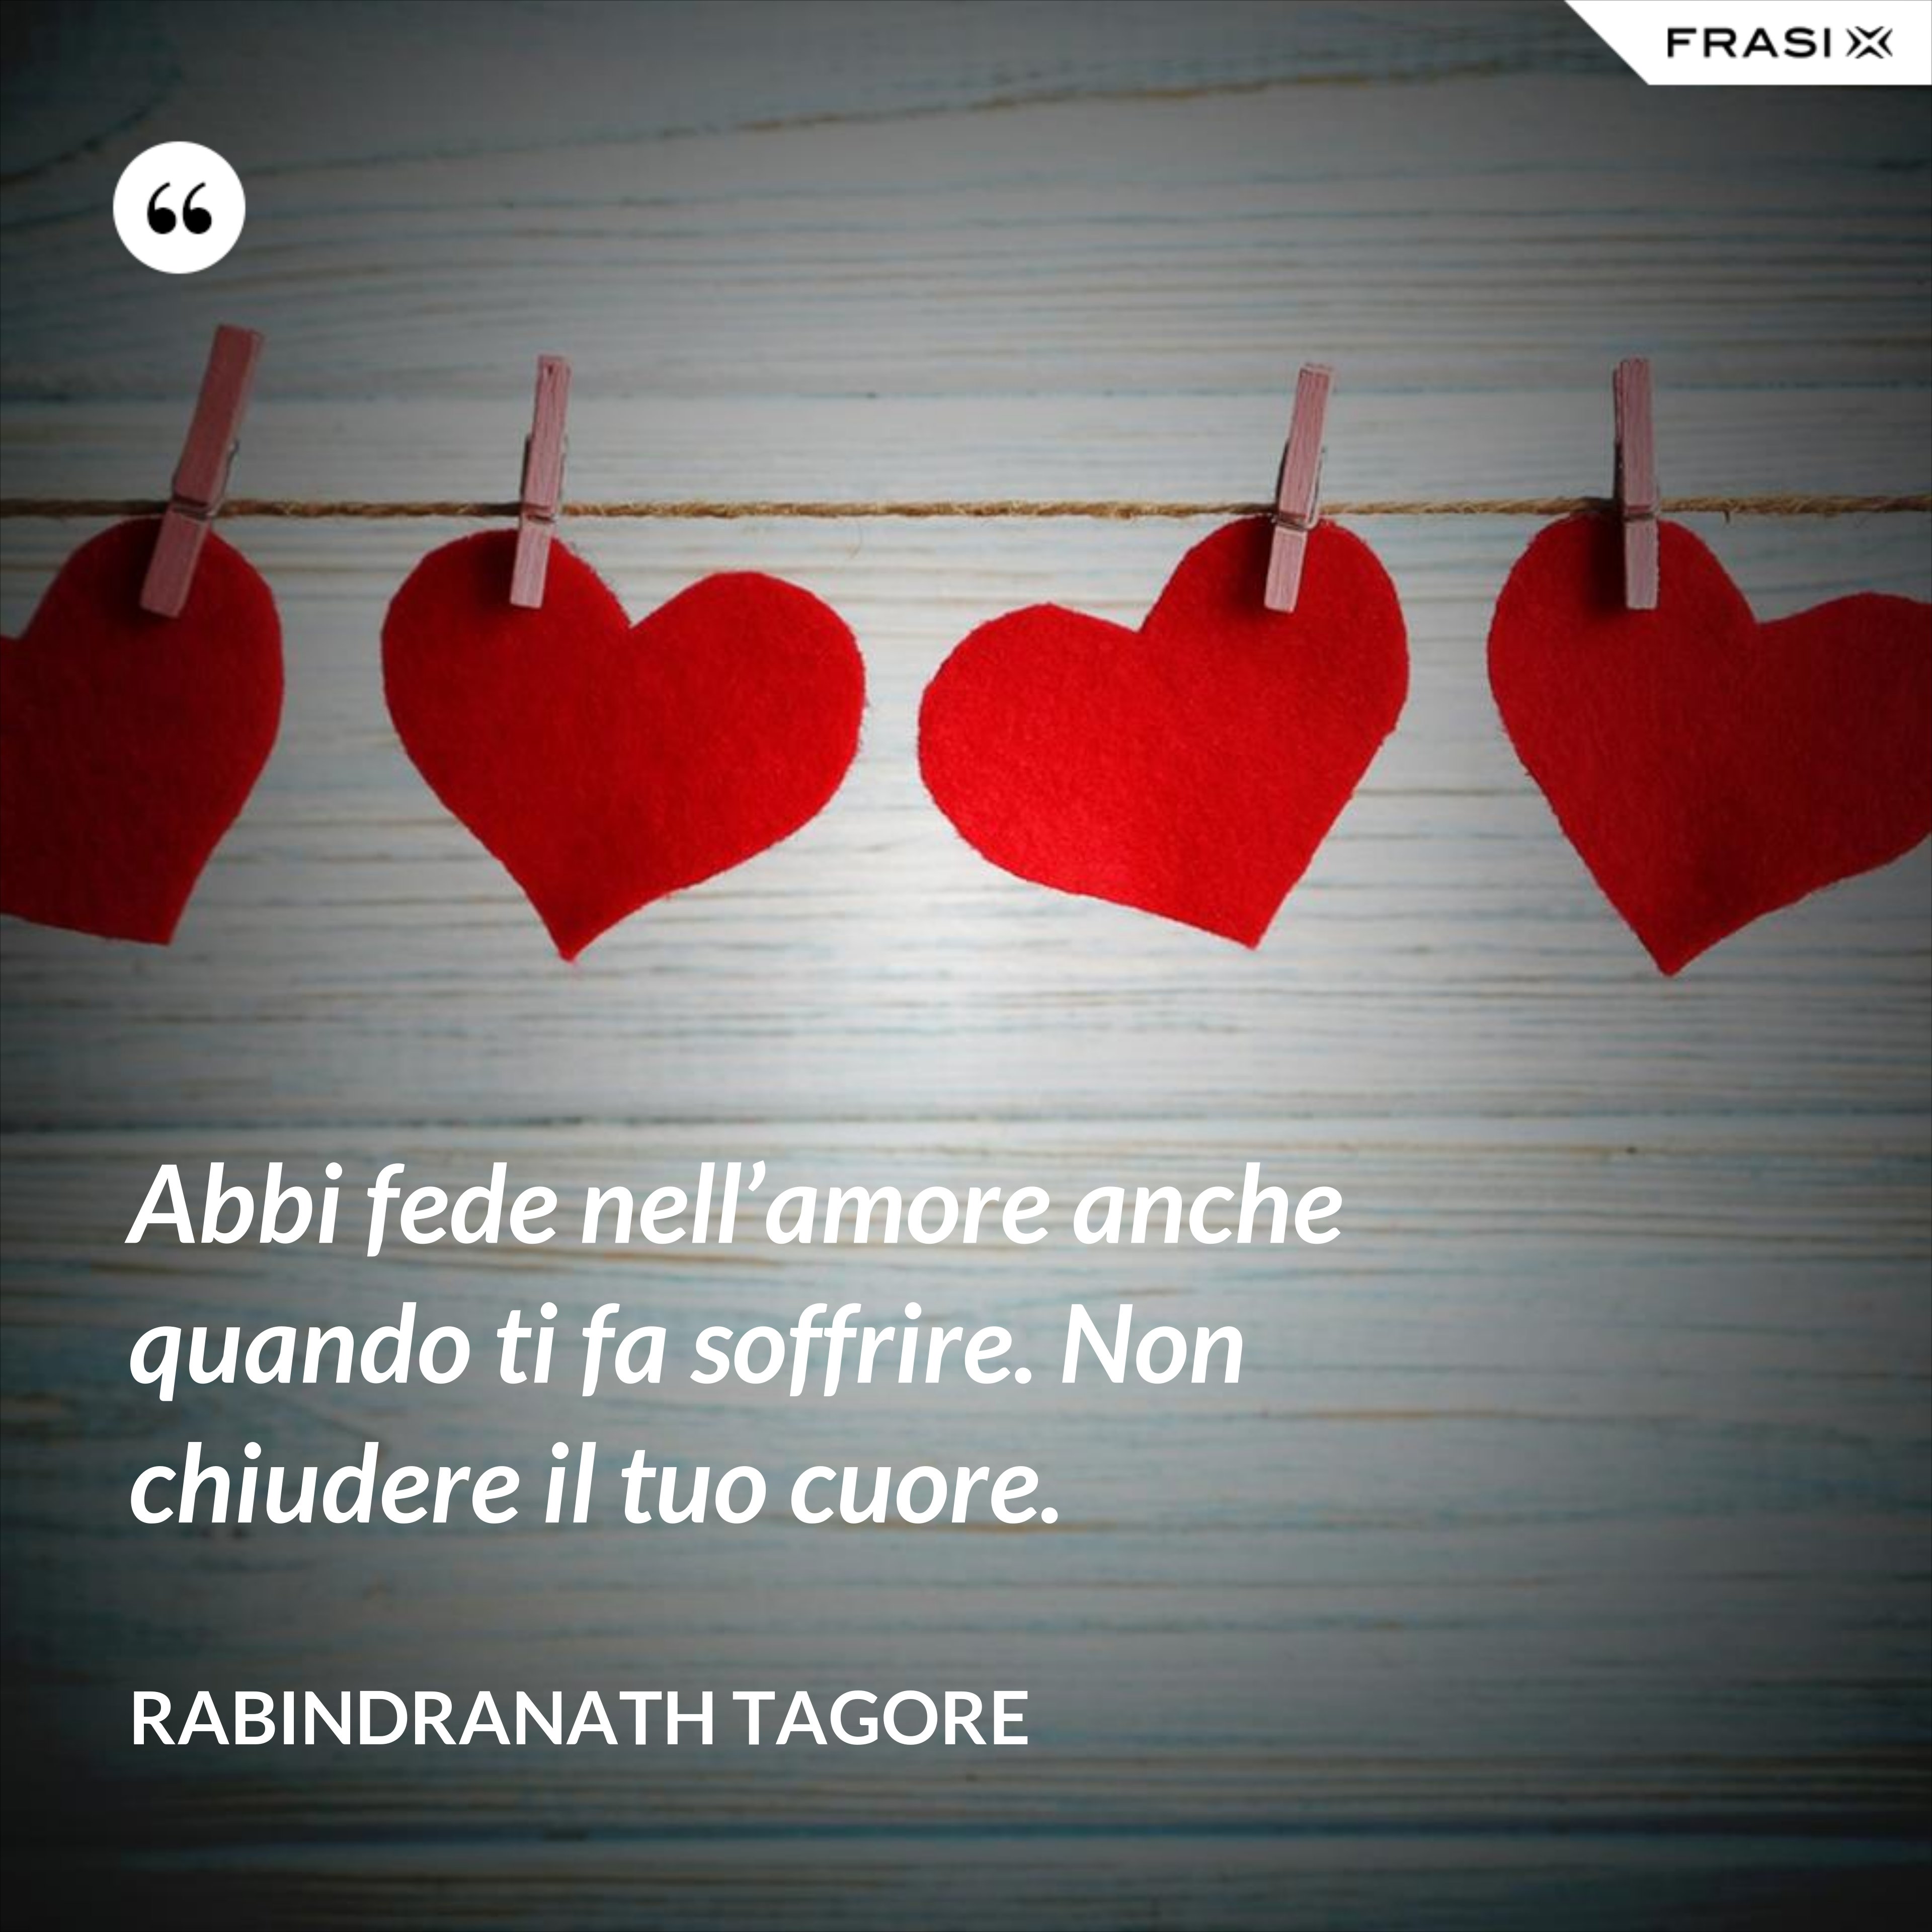 Abbi fede nell’amore anche quando ti fa soffrire. Non chiudere il tuo cuore. - Rabindranath Tagore